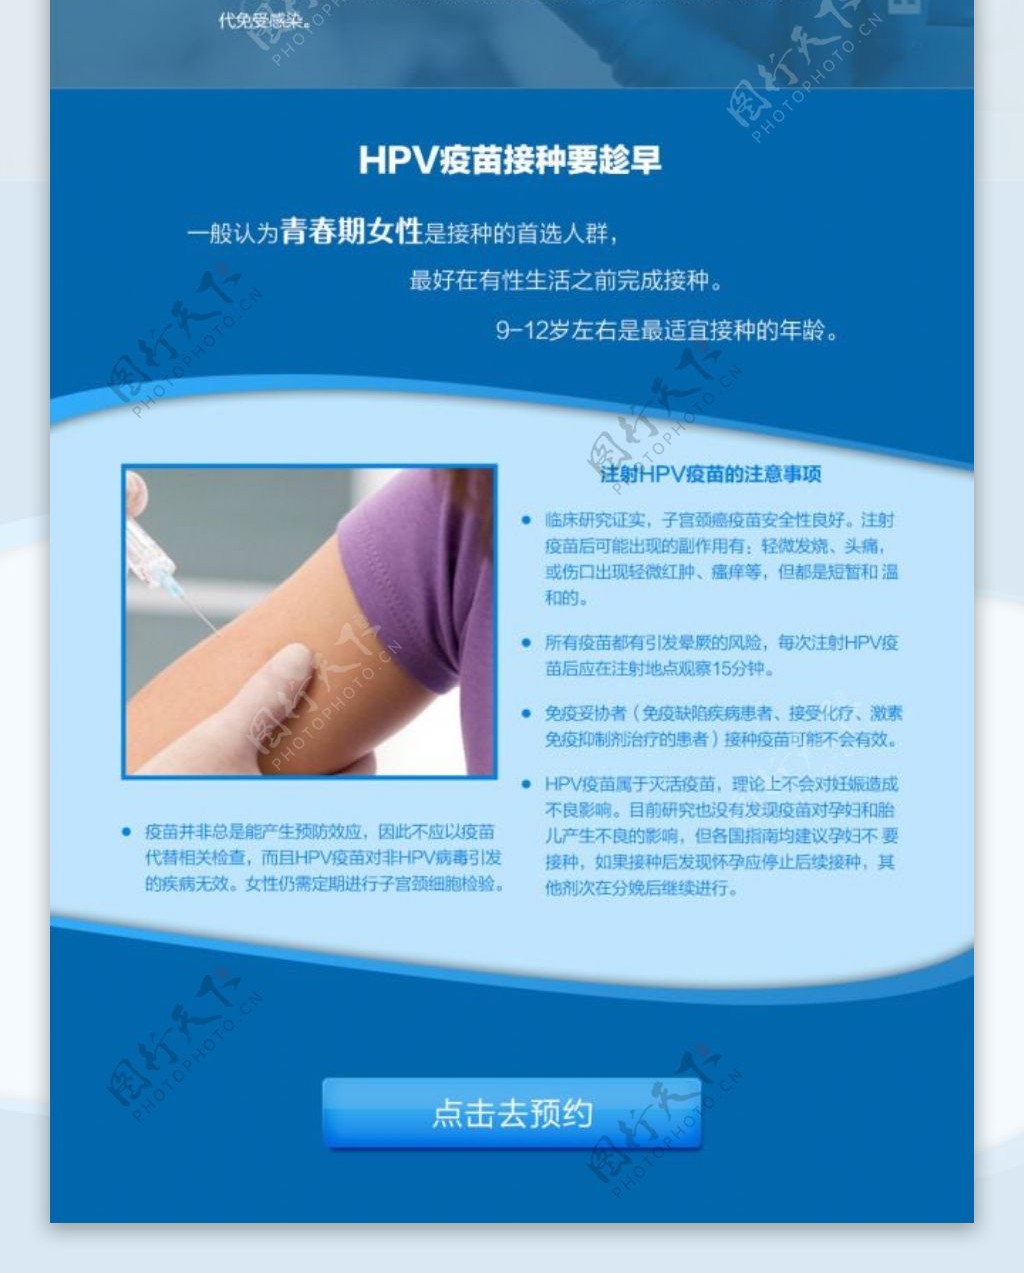 医务通HPV疫苗移动专题